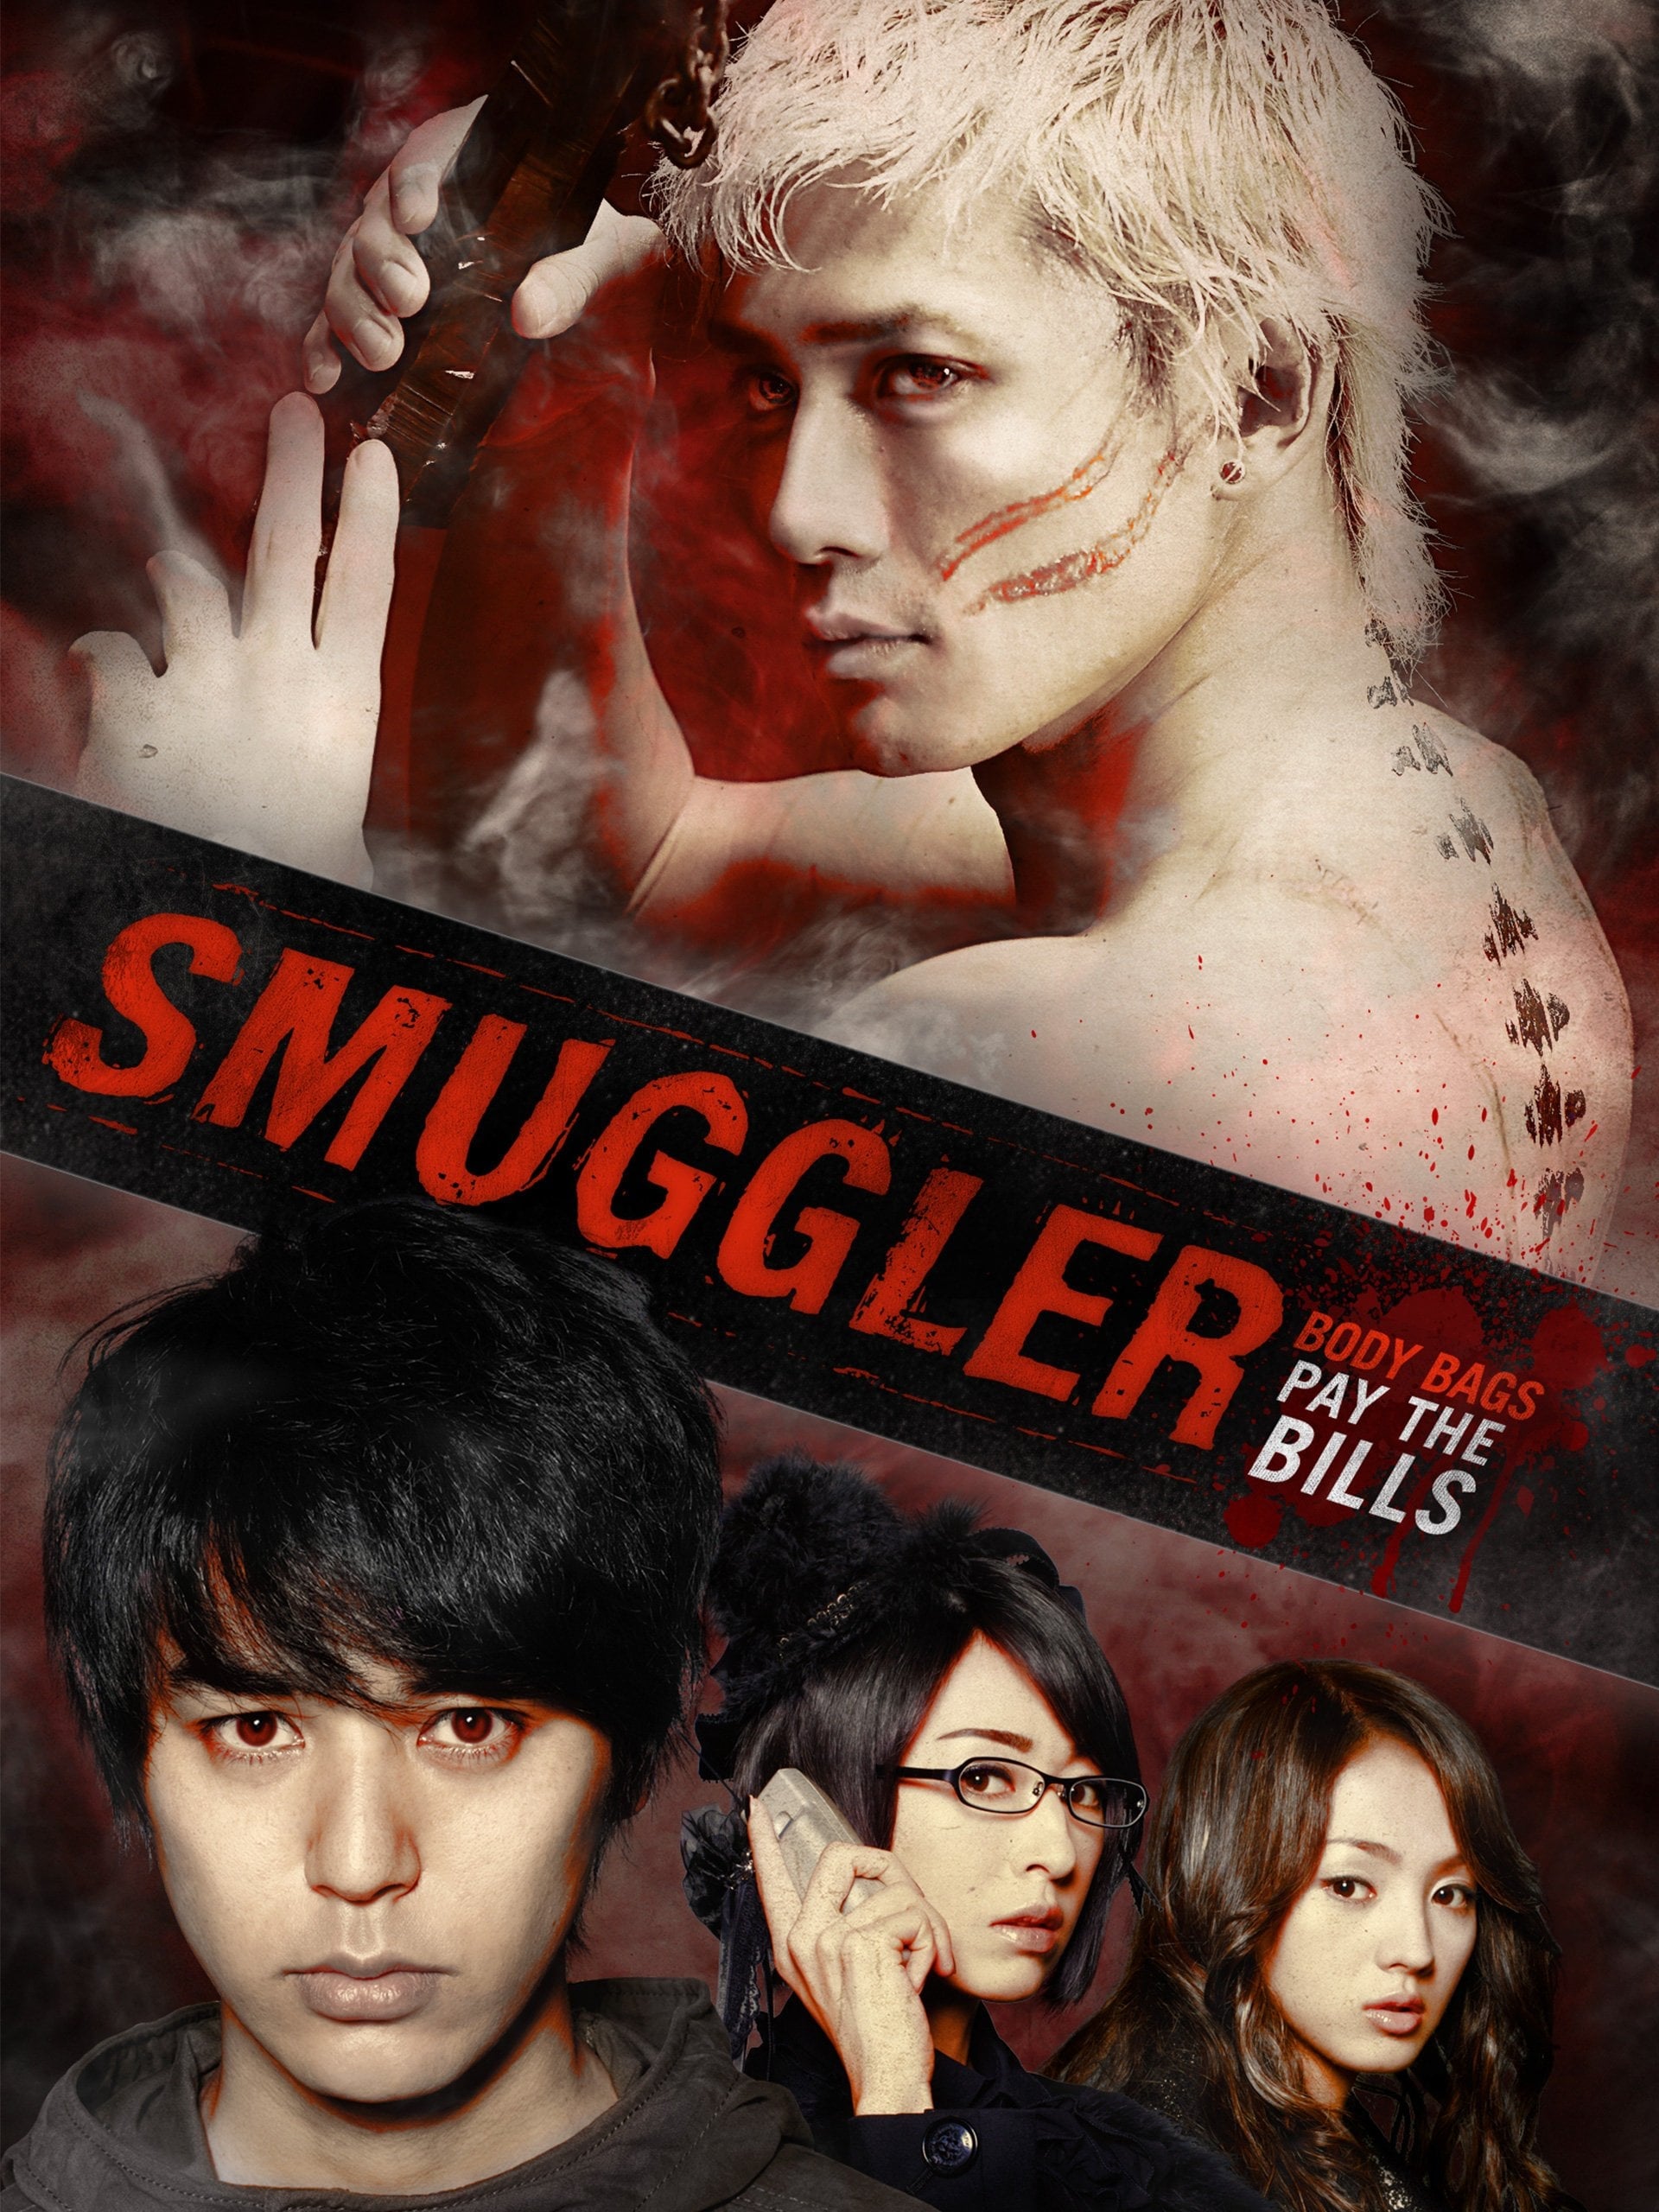 Smuggler (2011)